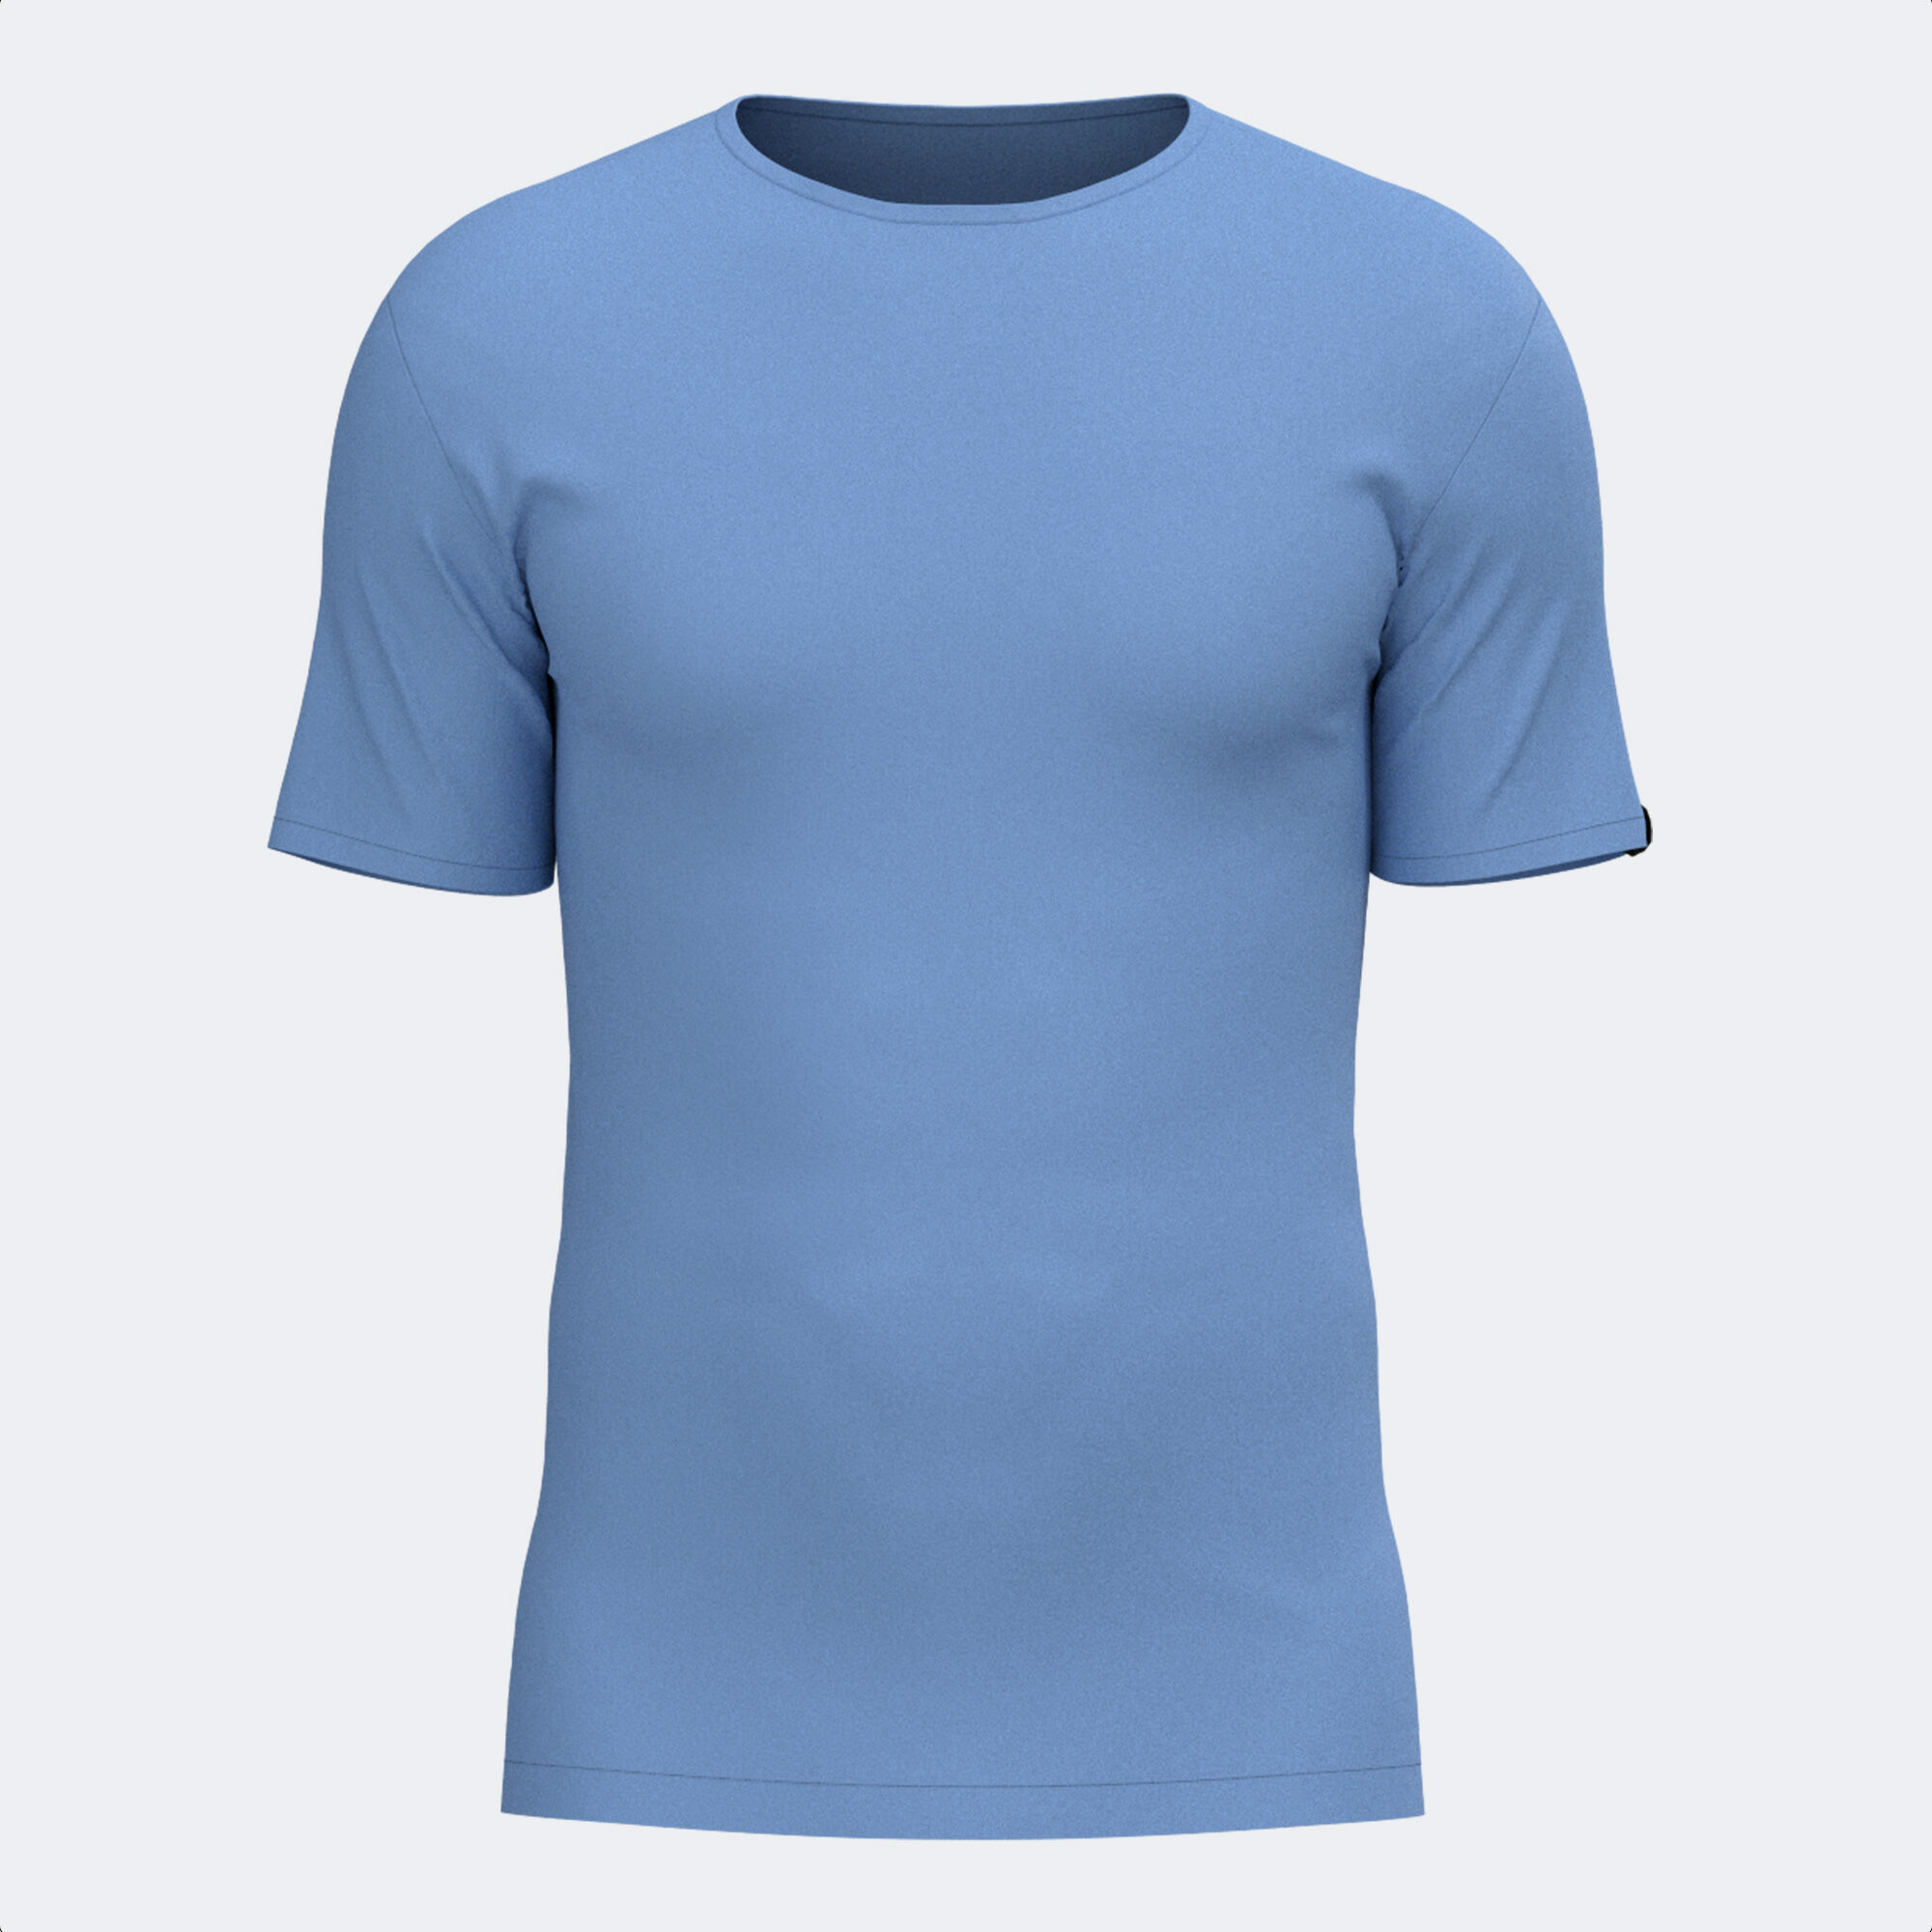 Shirt short sleeve man Desert blue